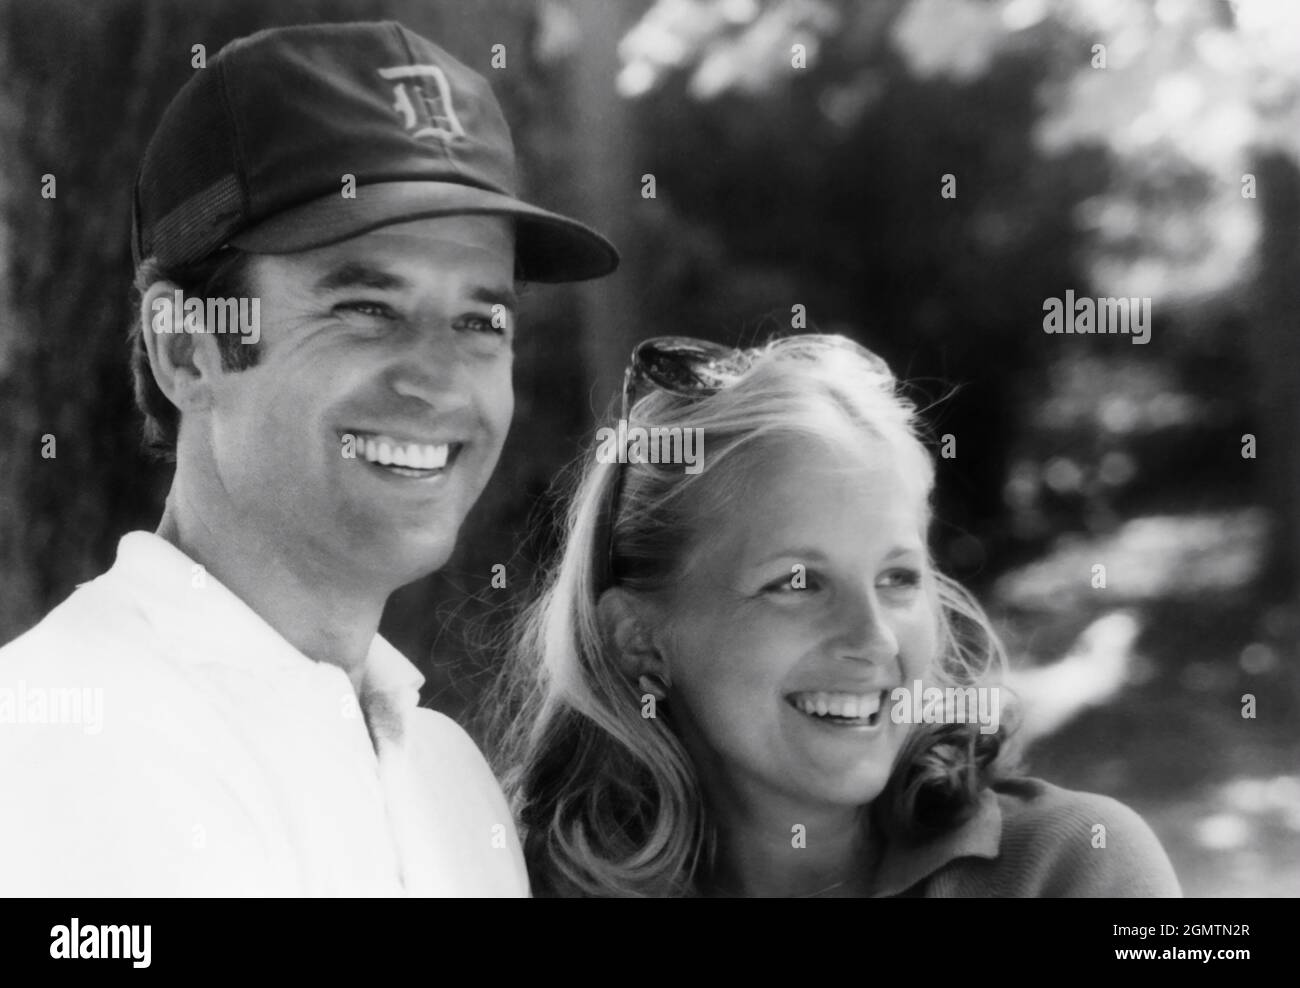 Joe and Jilly Biden, early photo Stock Photo